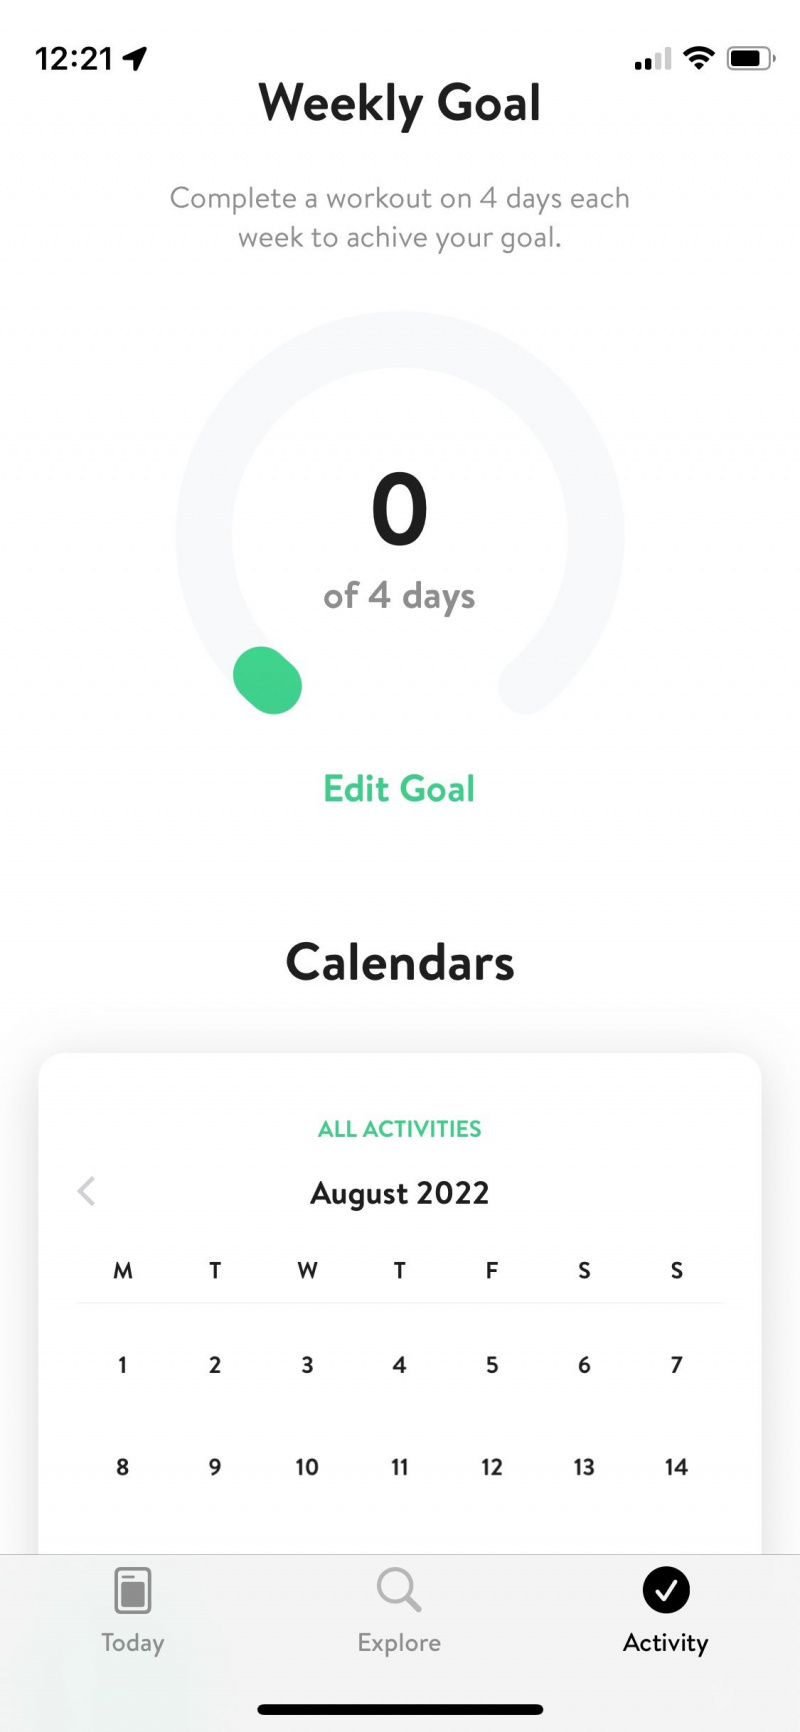   Captura de pantalla de la aplicación Asana Rebel que muestra la pantalla de objetivos semanales